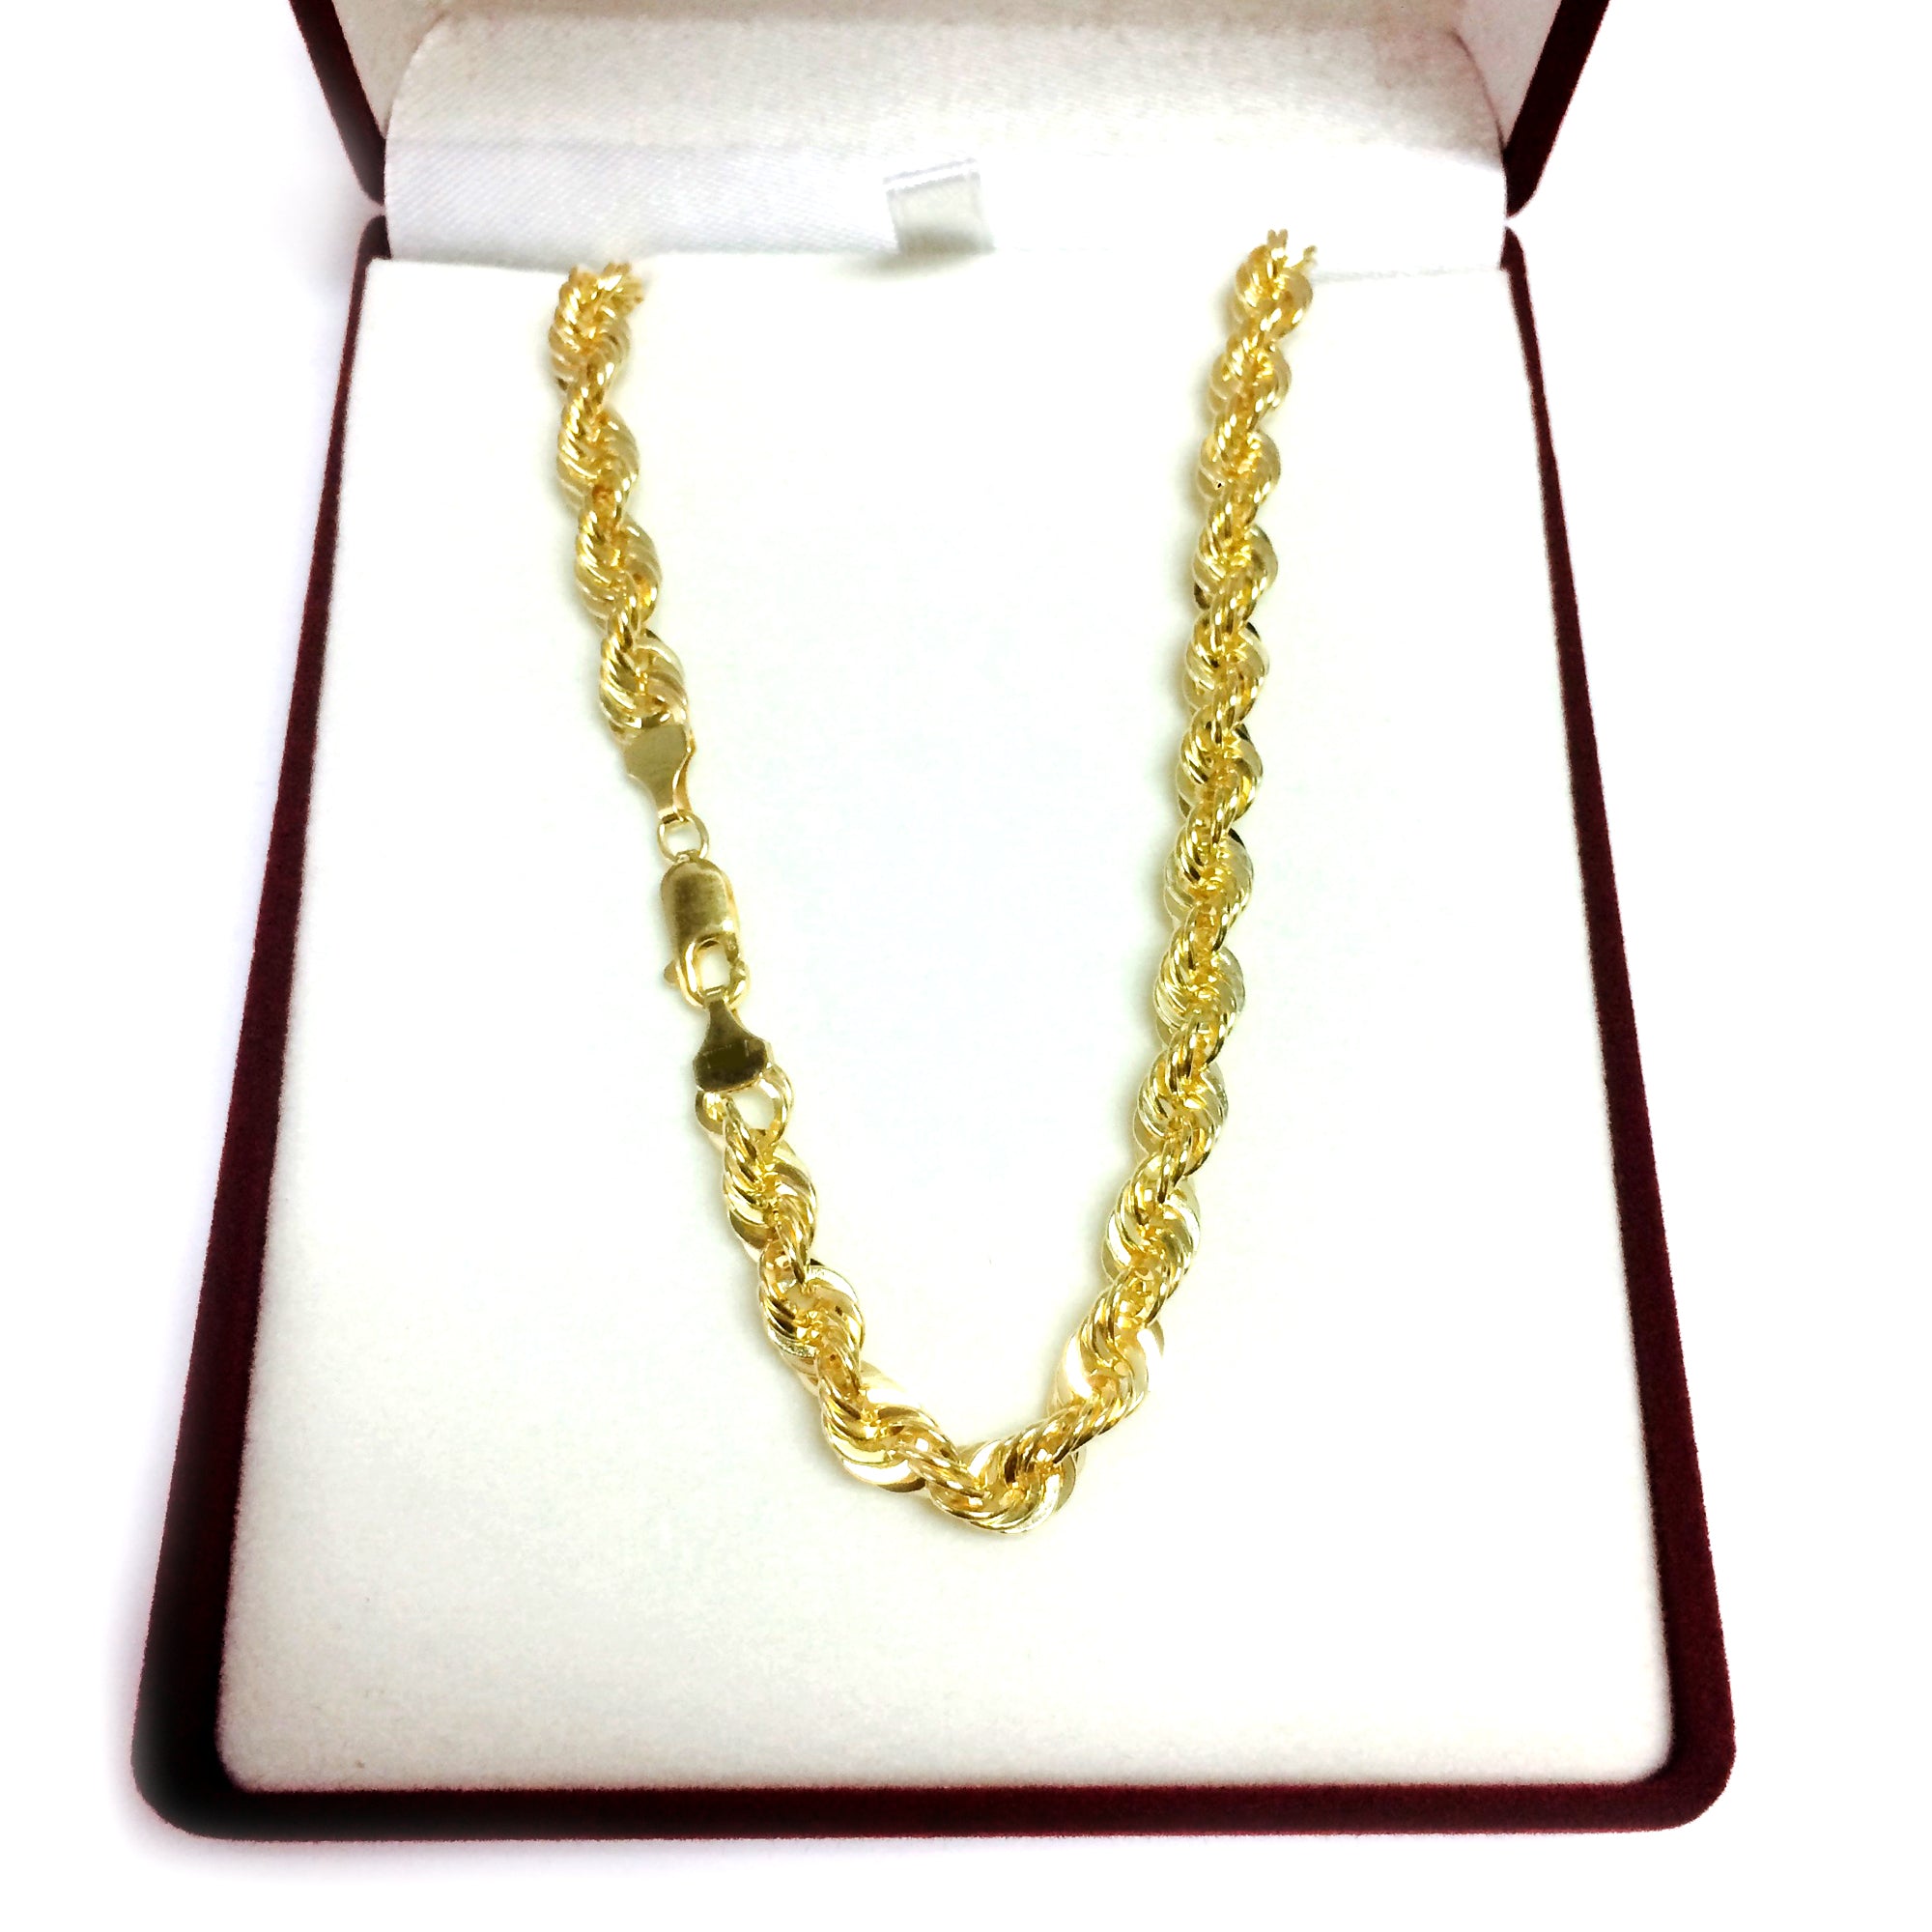 14K gult guldfyllt massivt repkedja halsband, 6,0 mm brett fina designersmycken för män och kvinnor